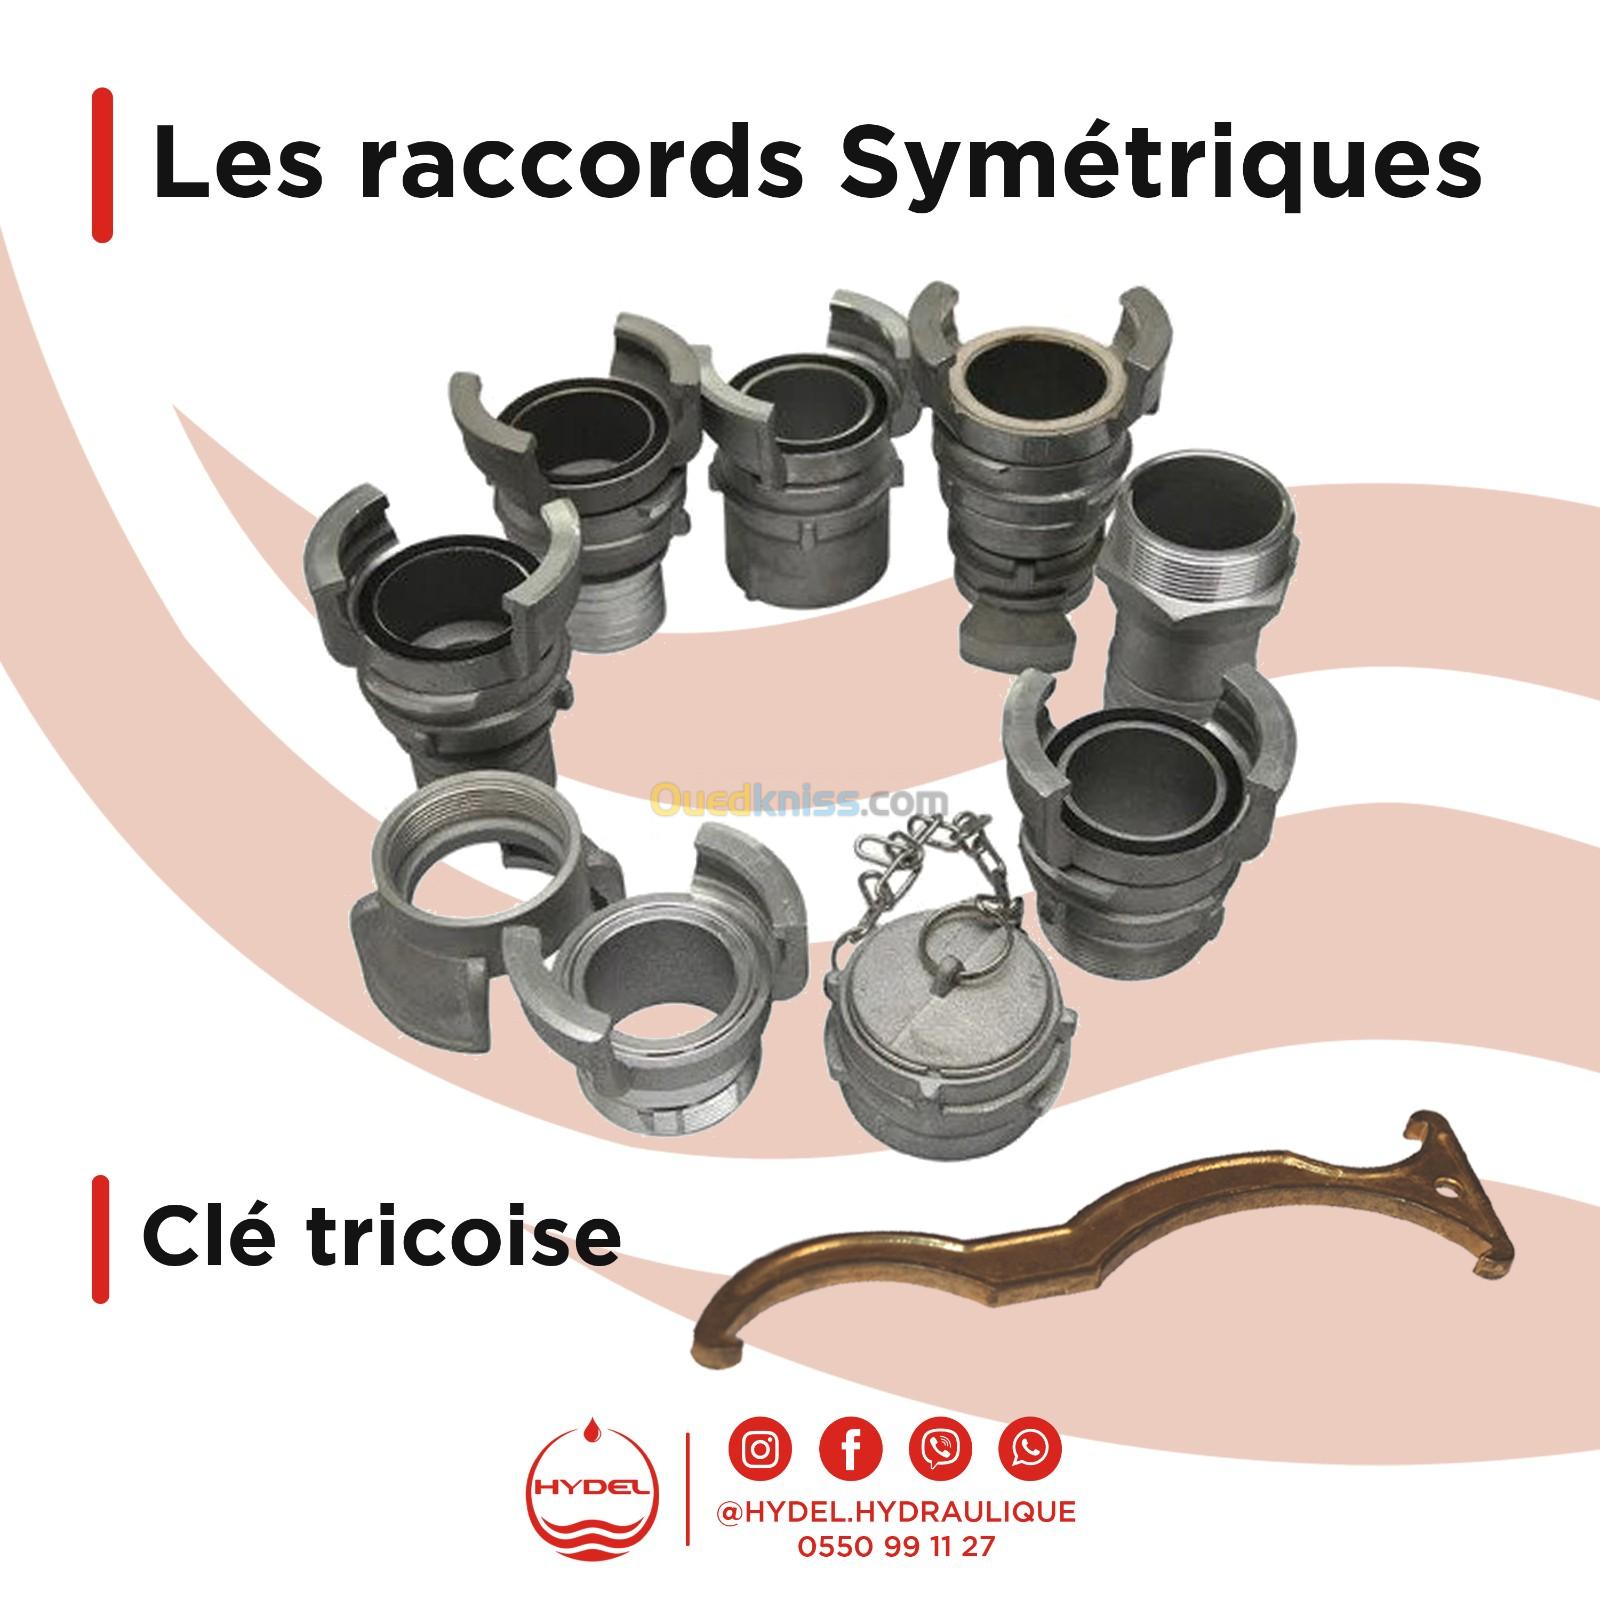 Raccords symétriques & Clé tricoise - Anti incendie (Anti-incendie) - Alger  Algérie